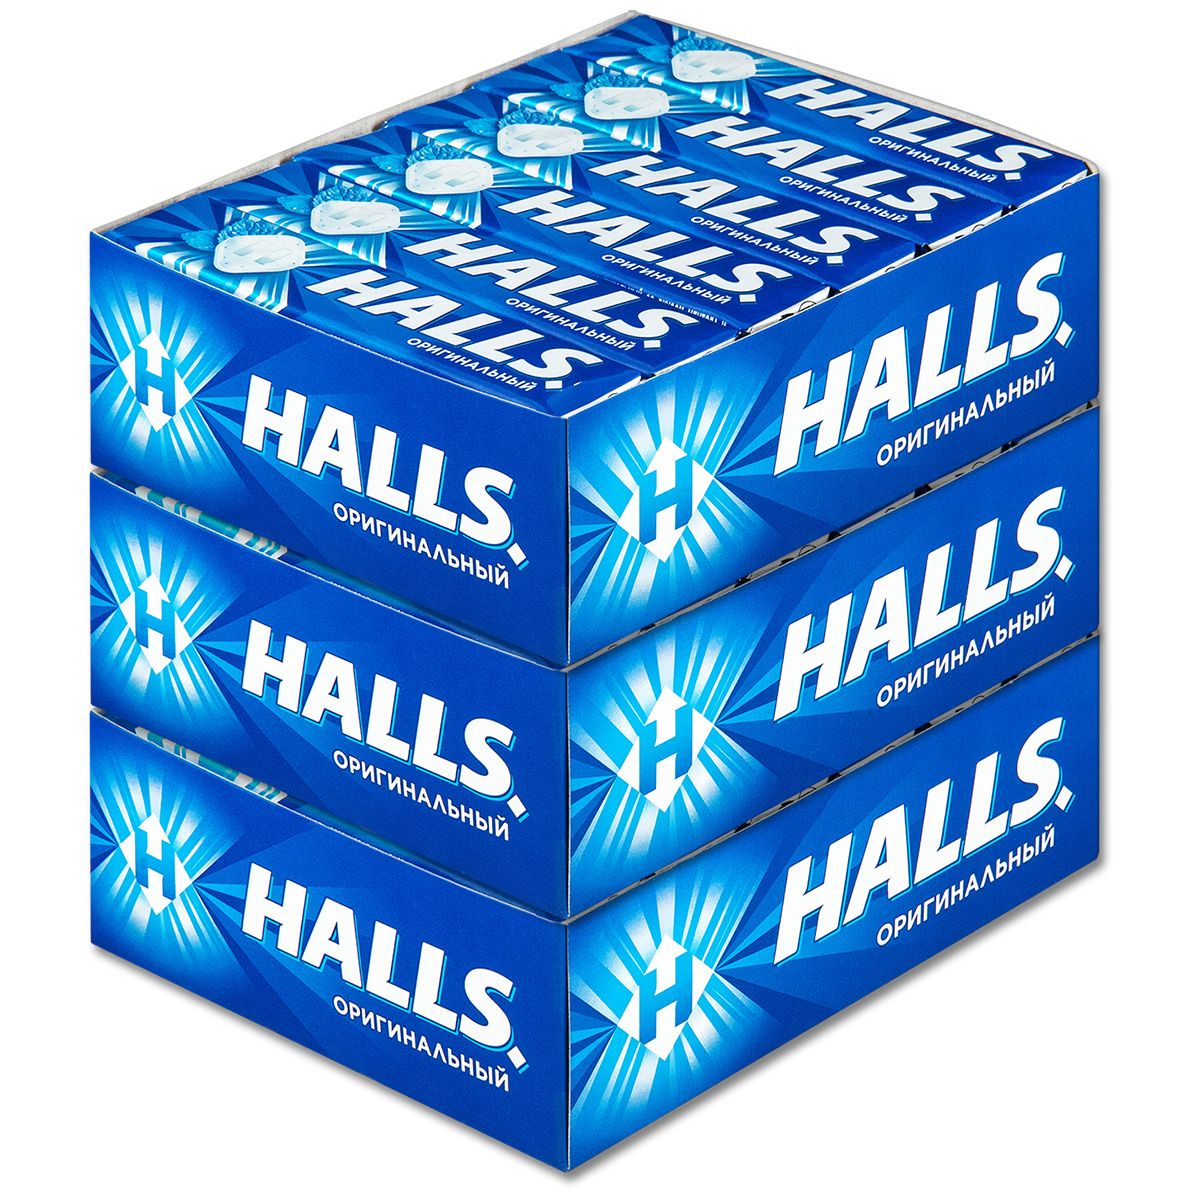 Halls ментол. Halls леденцы. Halls оригинальный. Halls синий. Halls леденцы синие.